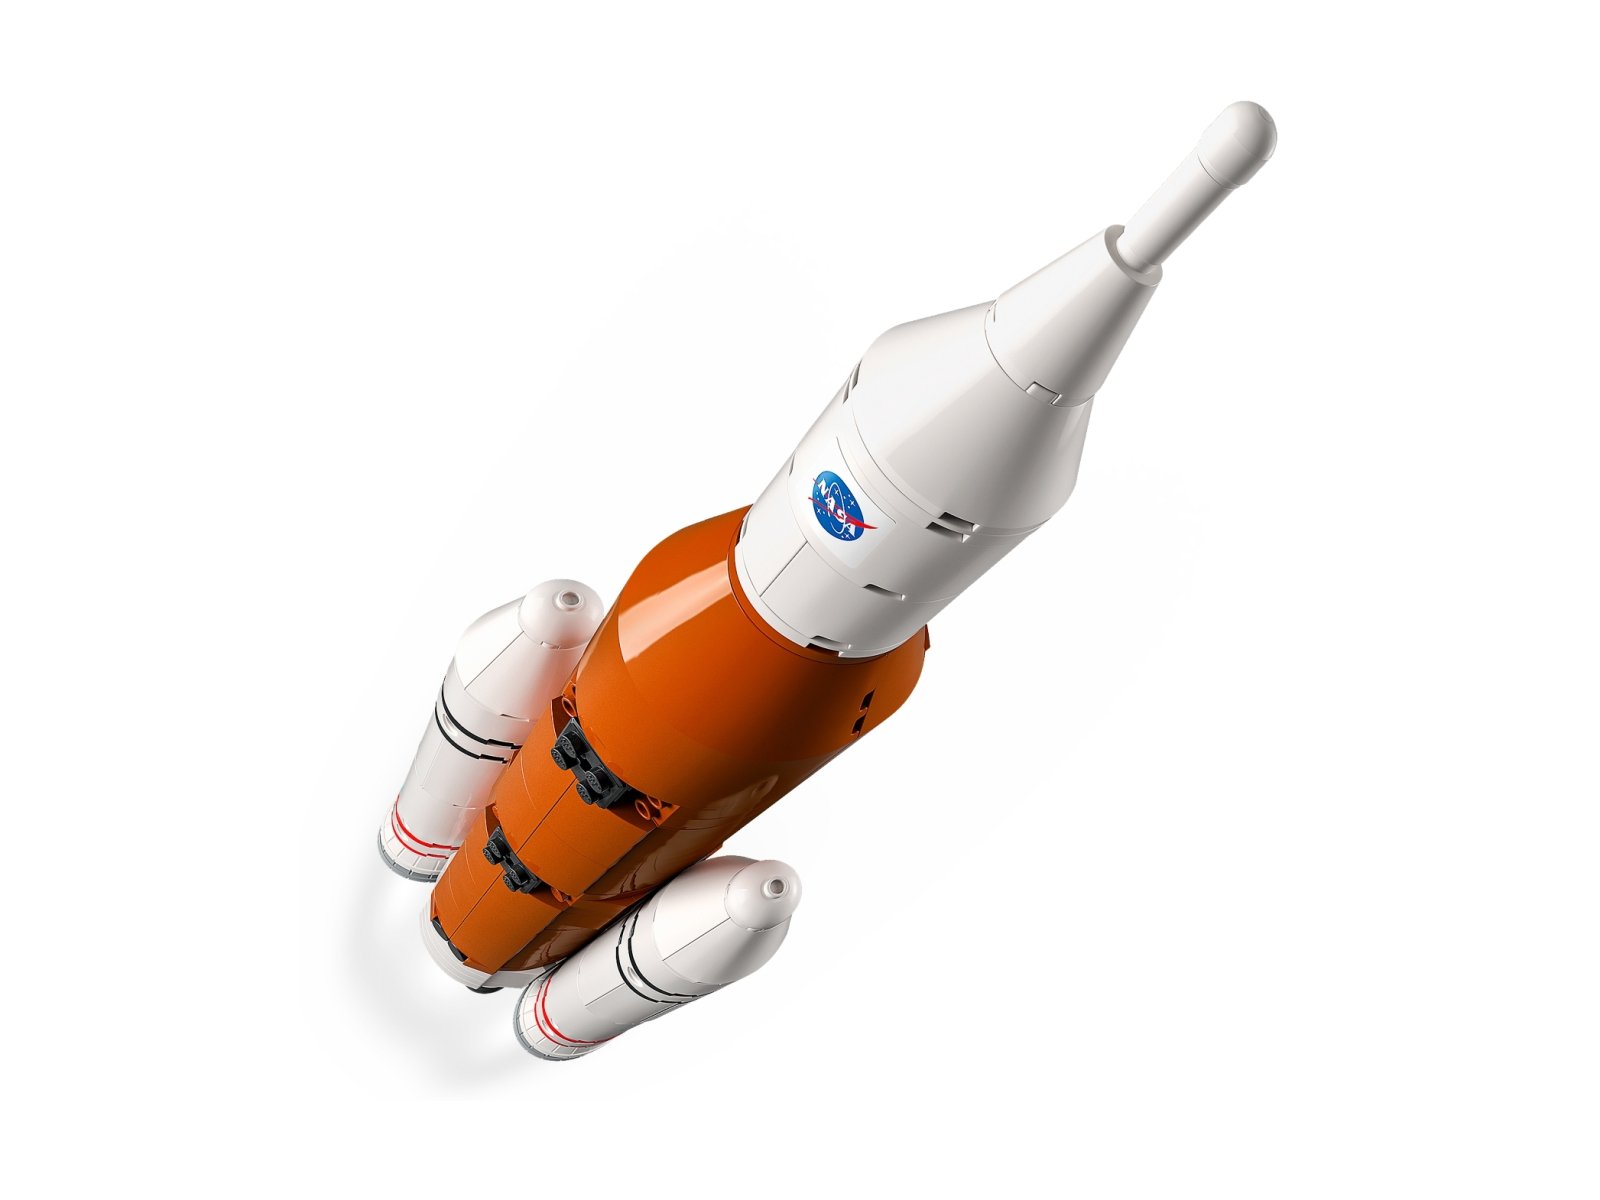 LEGO City 60351 Start rakiety z kosmodromu